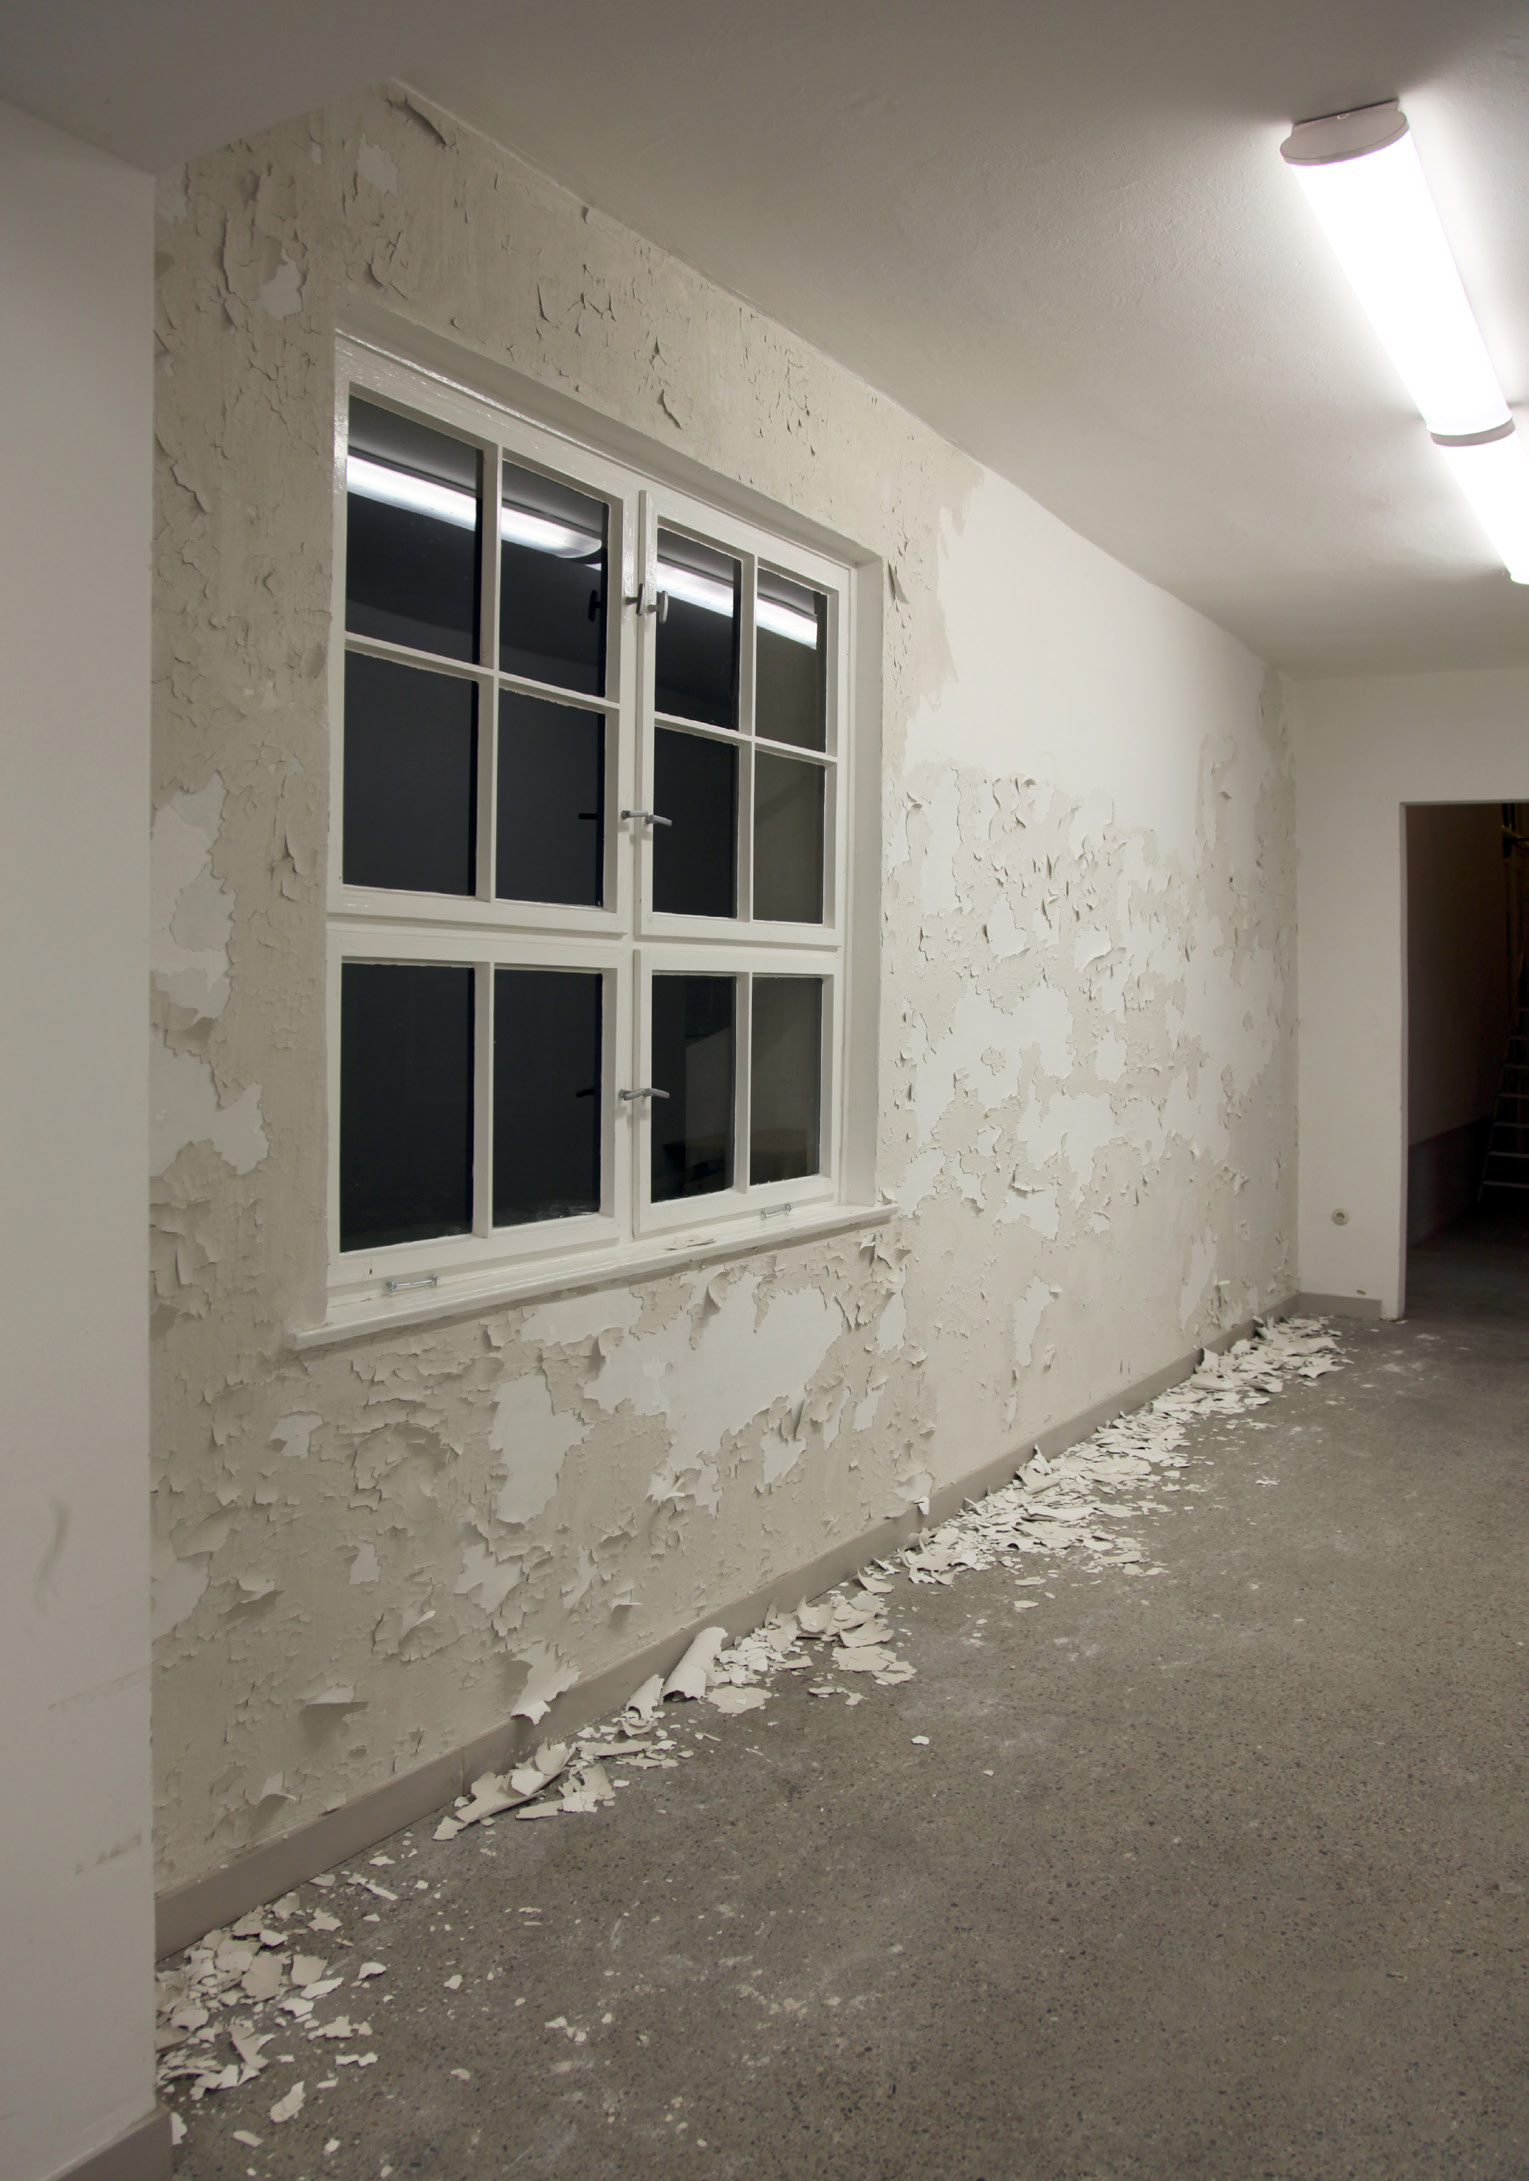 SELBSTHÄUTENDE WAND, 2012, Ton, Pigment, Binder, 450x320x3cm Eine glatt verputzte Wand häutet sich nach und nach über den